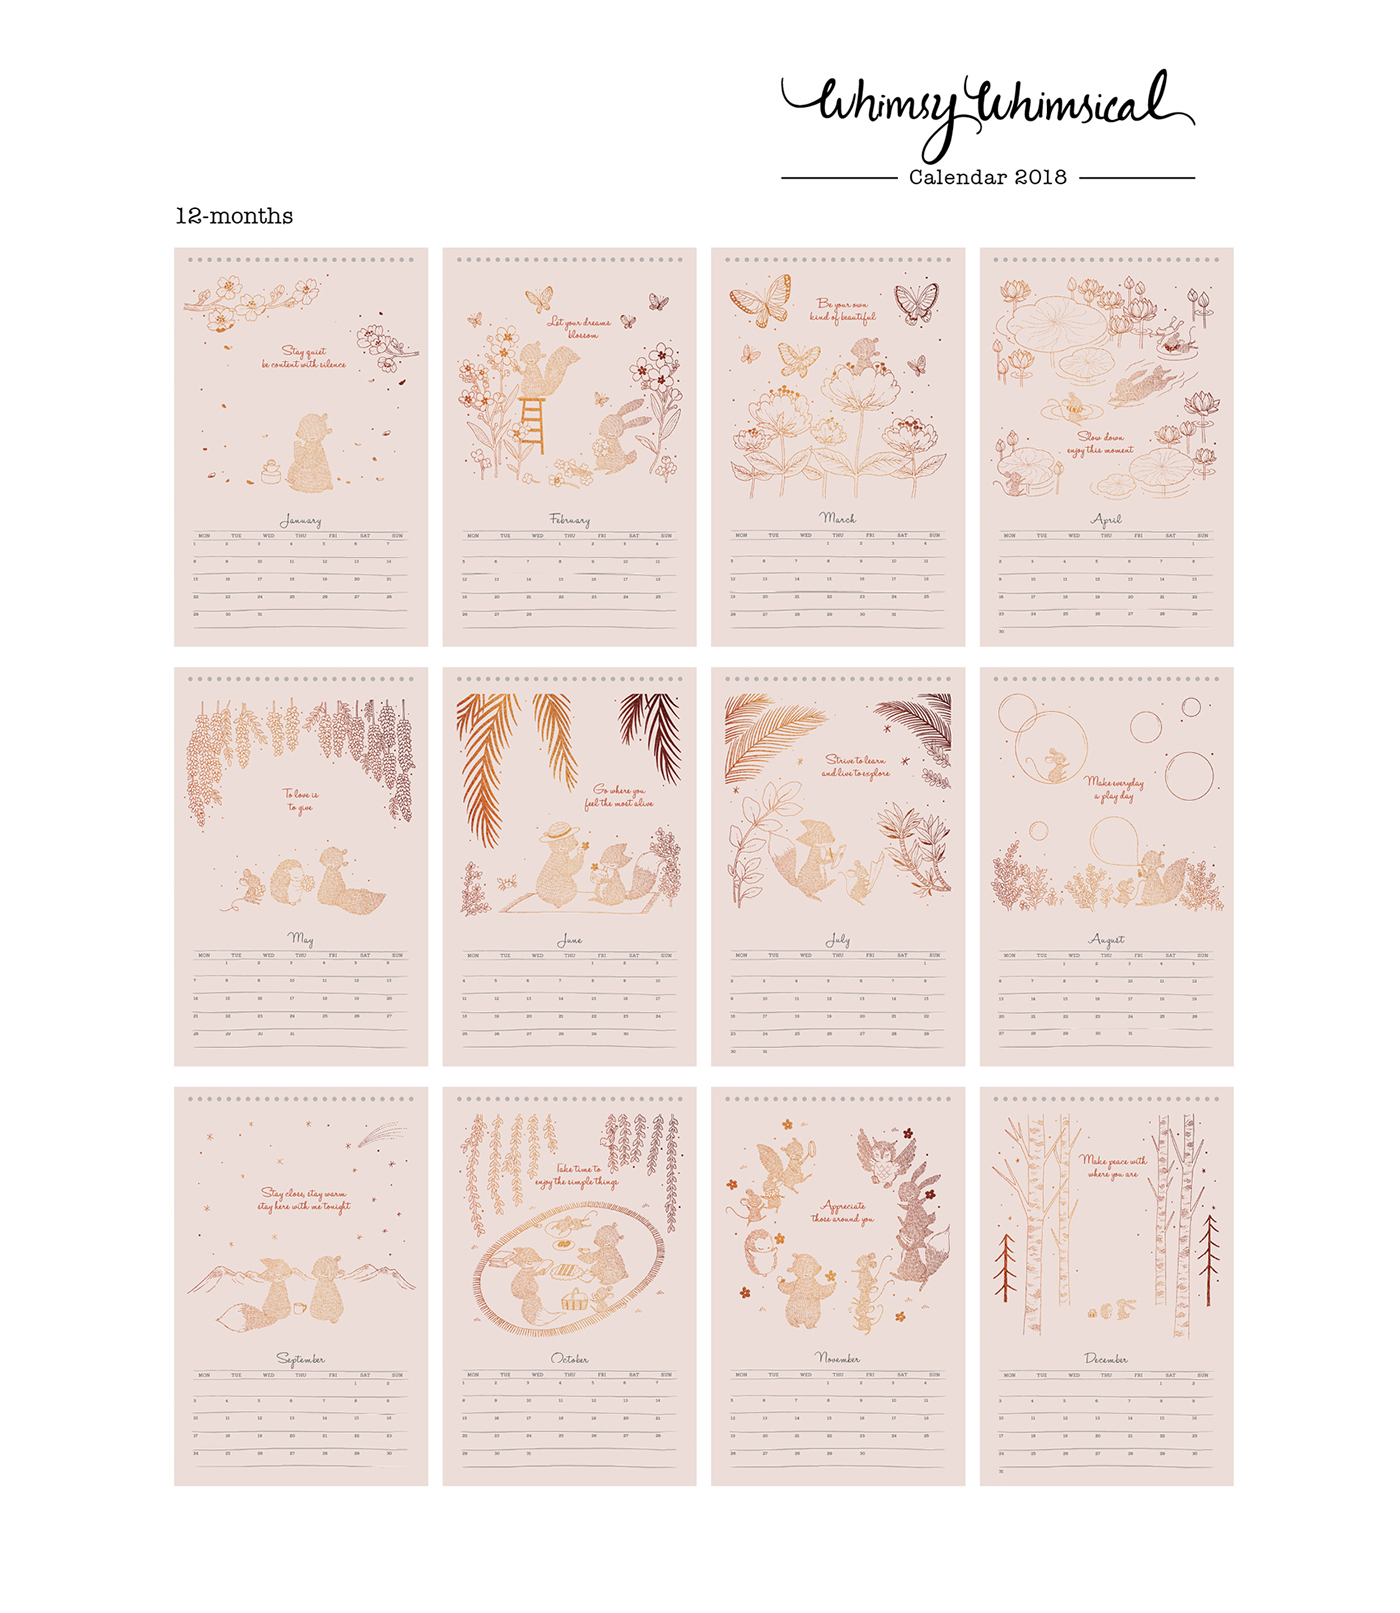 illustrations Stationery calendar calendar 2018 planner woodland forest animals copper foil desk calendar